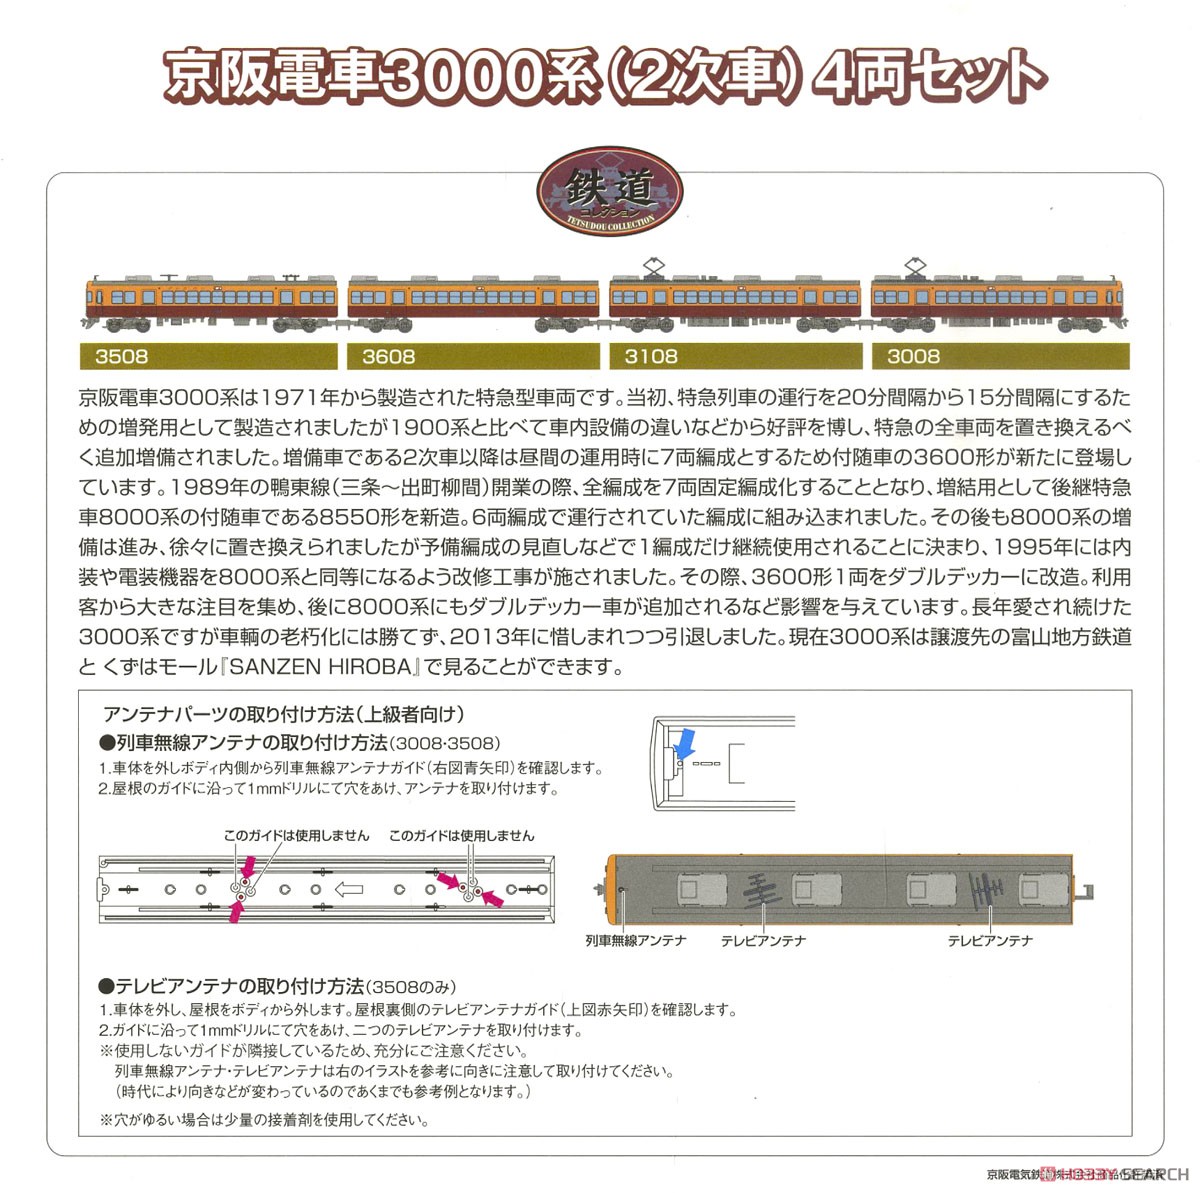 鉄道コレクション 京阪電車3000系 (2次車) (4両セット) (鉄道模型) 解説1